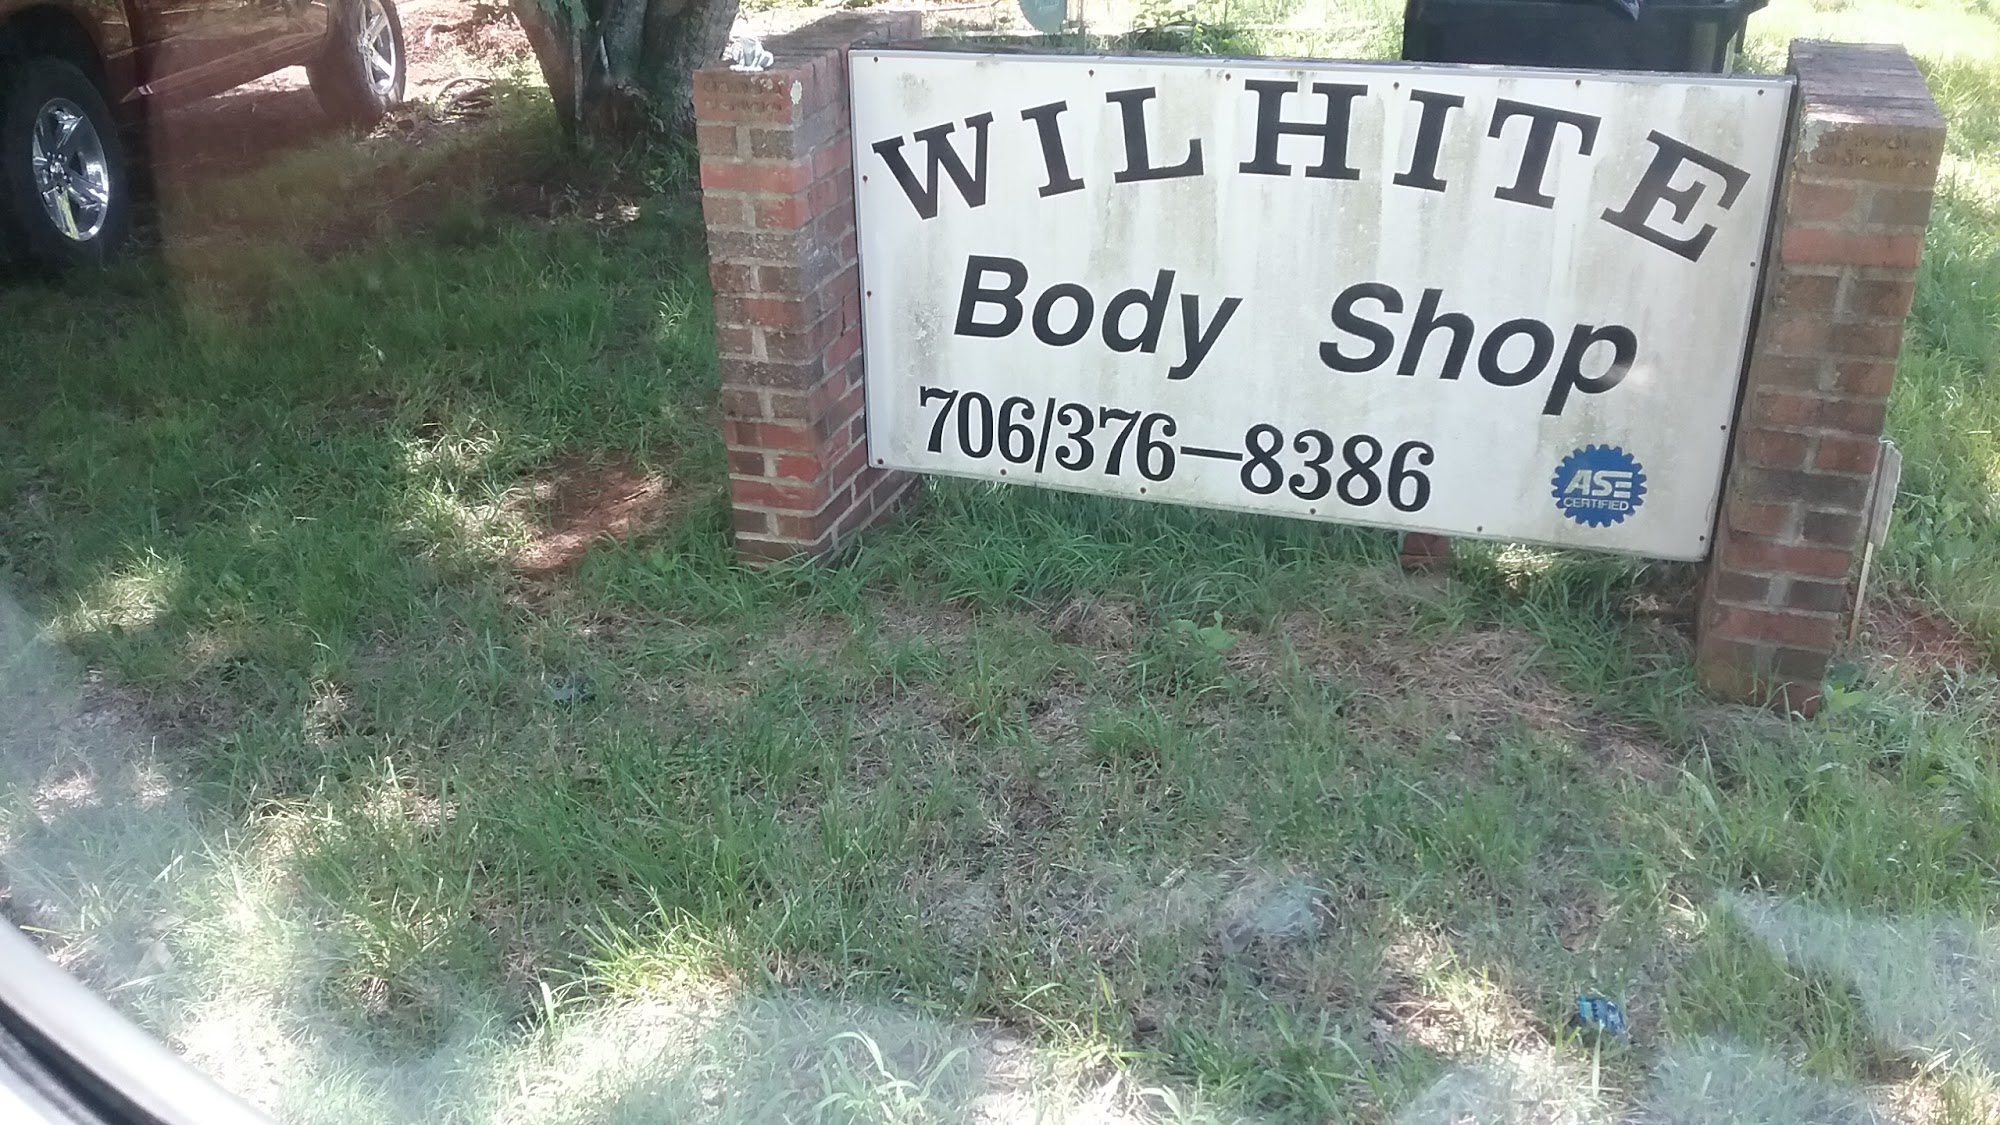 Wilhite Body & Paint Shop